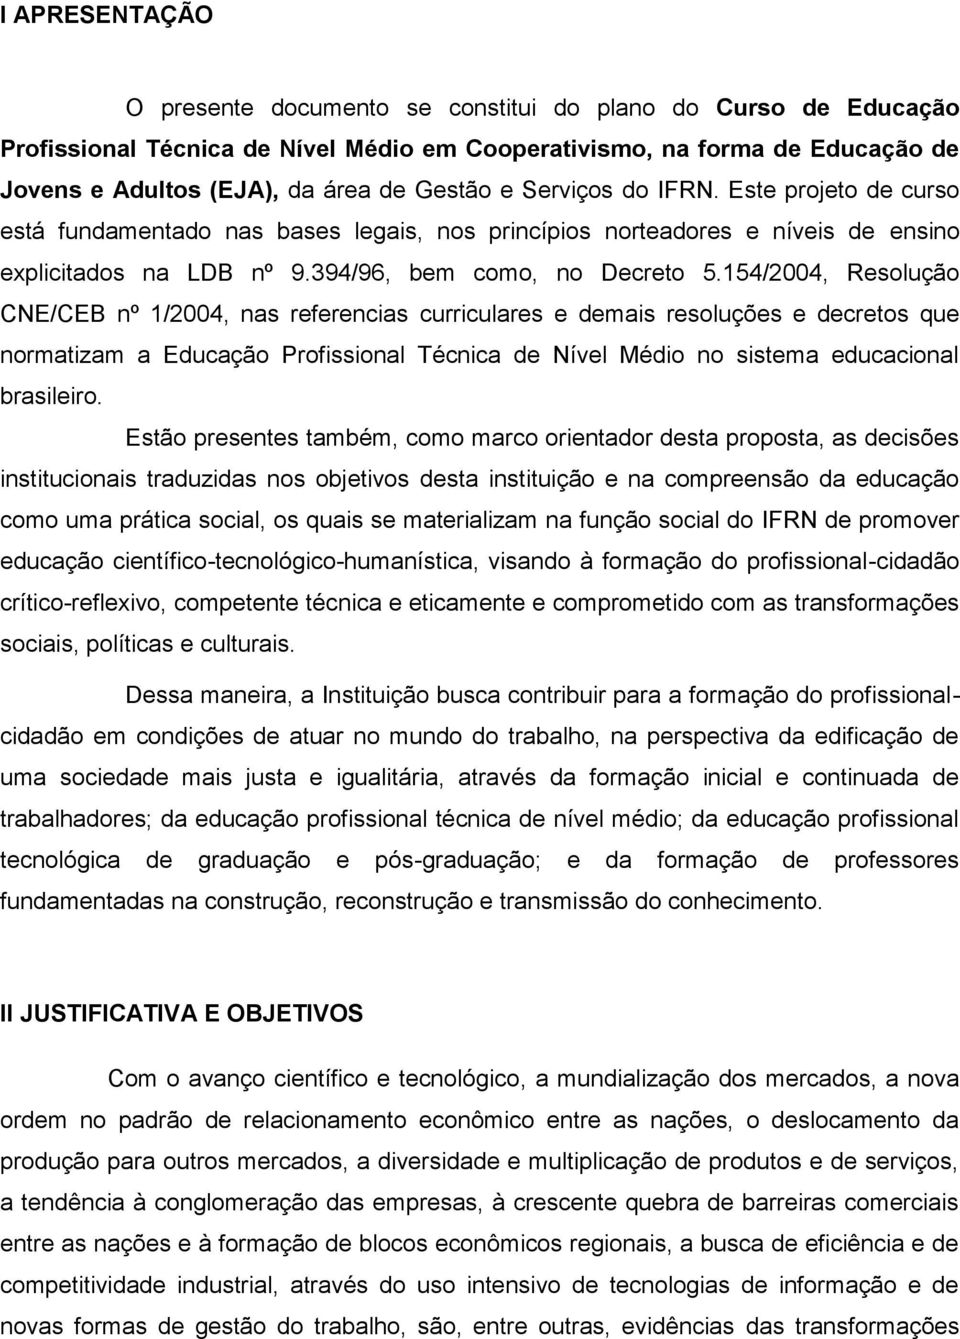 154/2004, Resolução CNE/CEB nº 1/2004, nas referencias curriculares e demais resoluções e decretos que normatizam a Educação Profissional Técnica de Nível Médio no sistema educacional brasileiro.